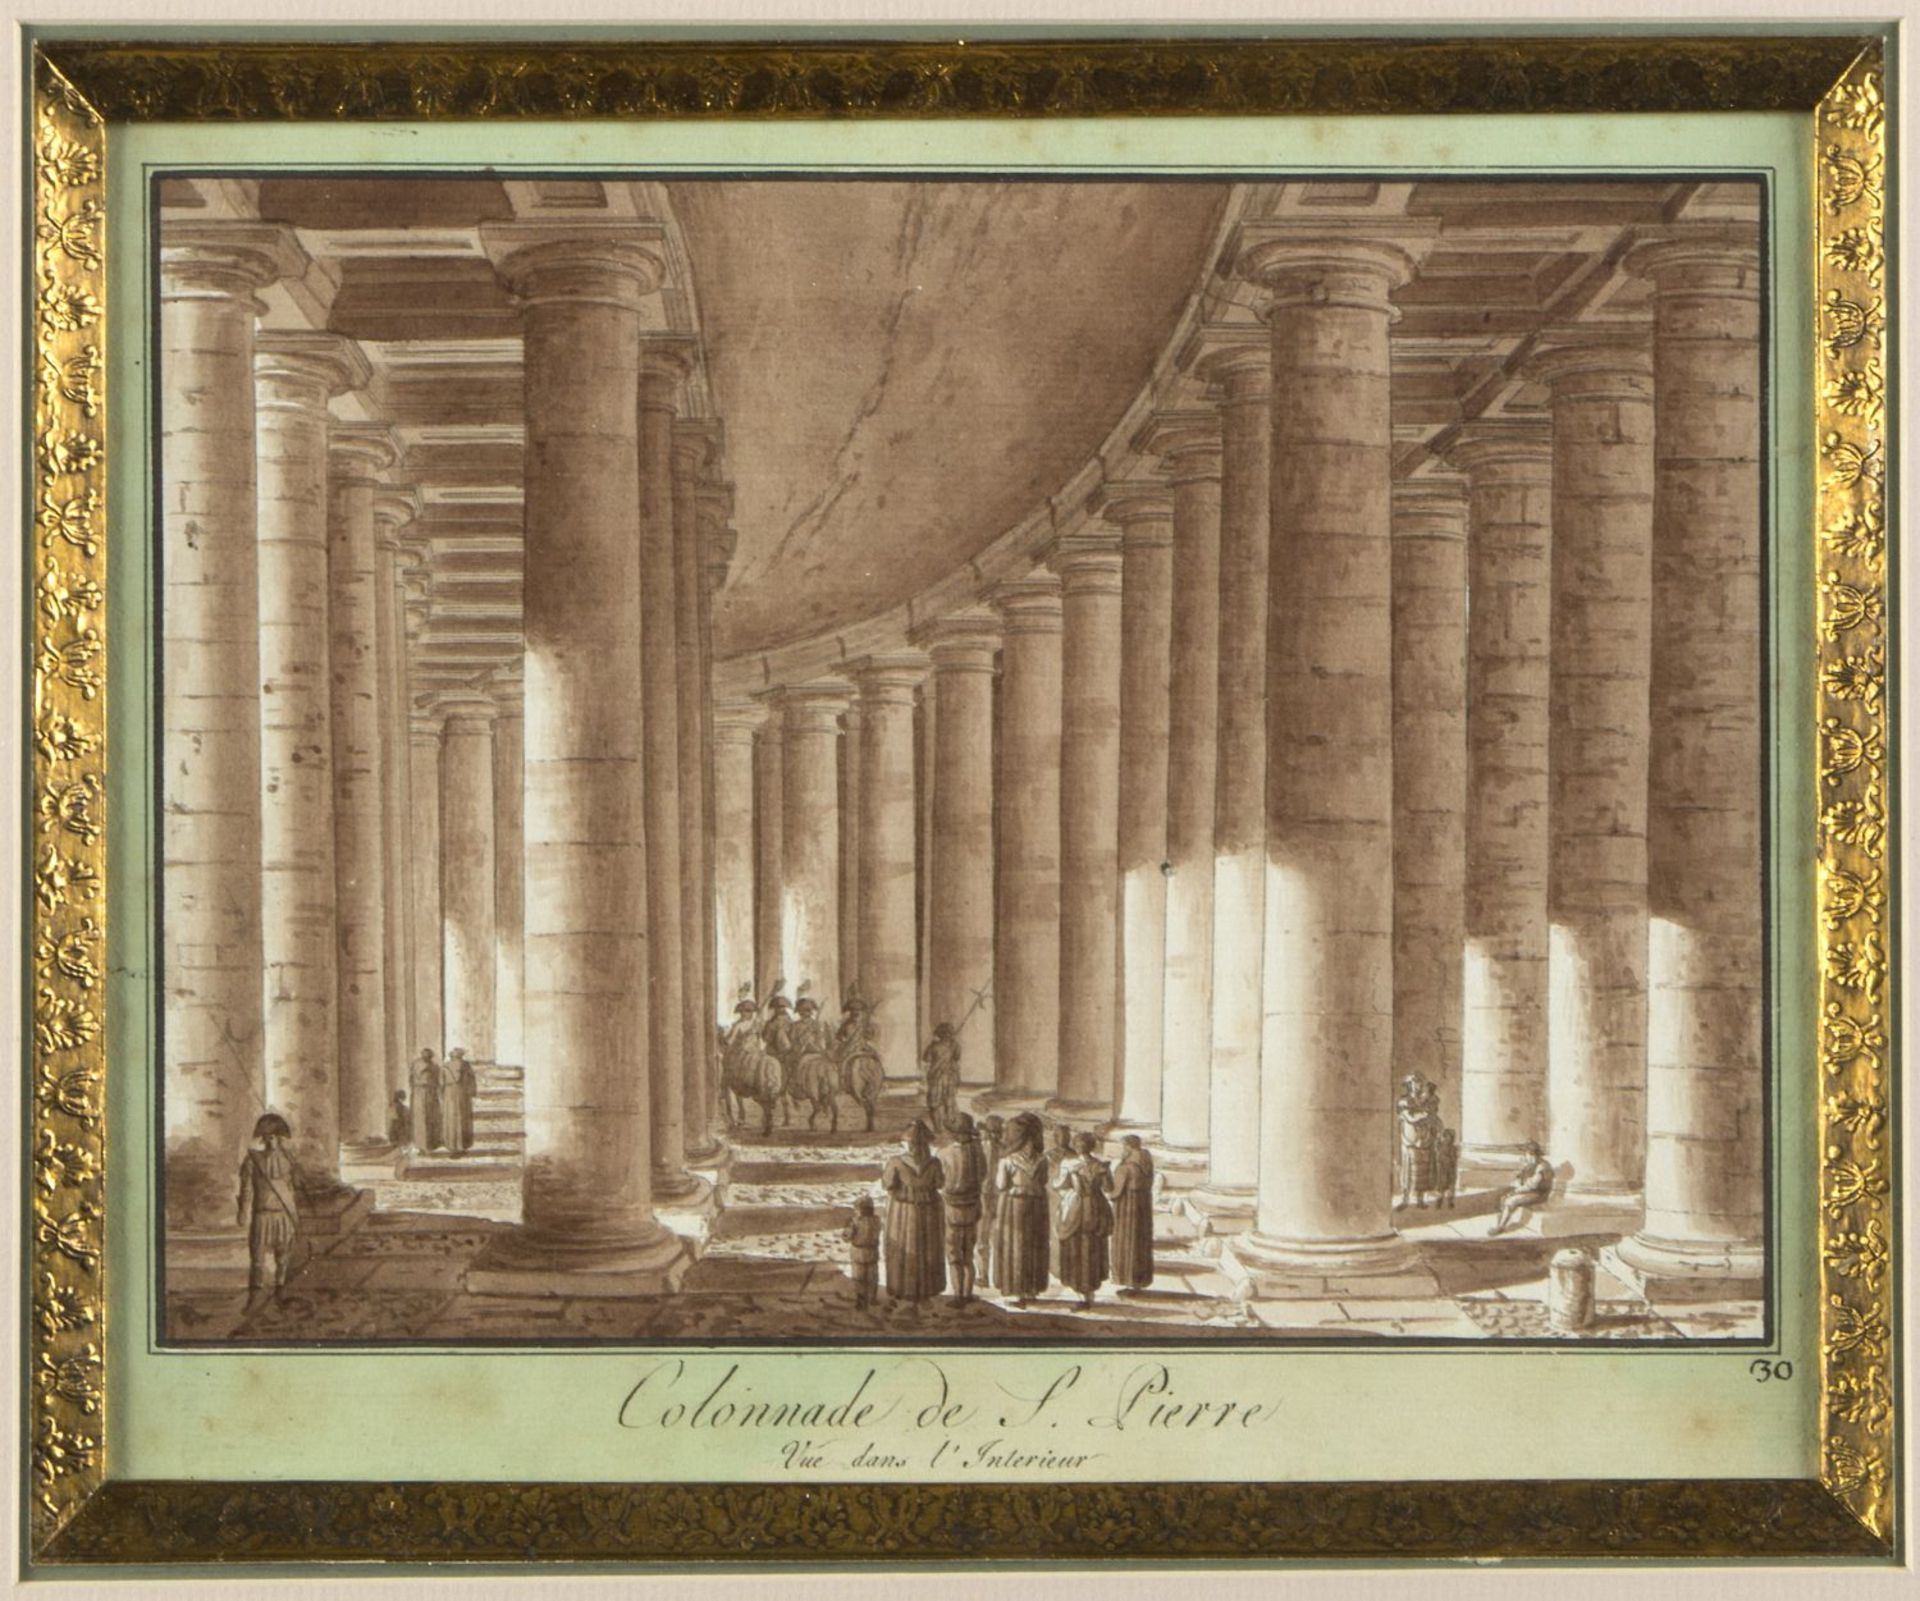 Uggeri, Angelo. 1754 - 1837. Zugeschrieben Colonnade de S. Pierre. Braun lavierte Tuschfederzeichn.